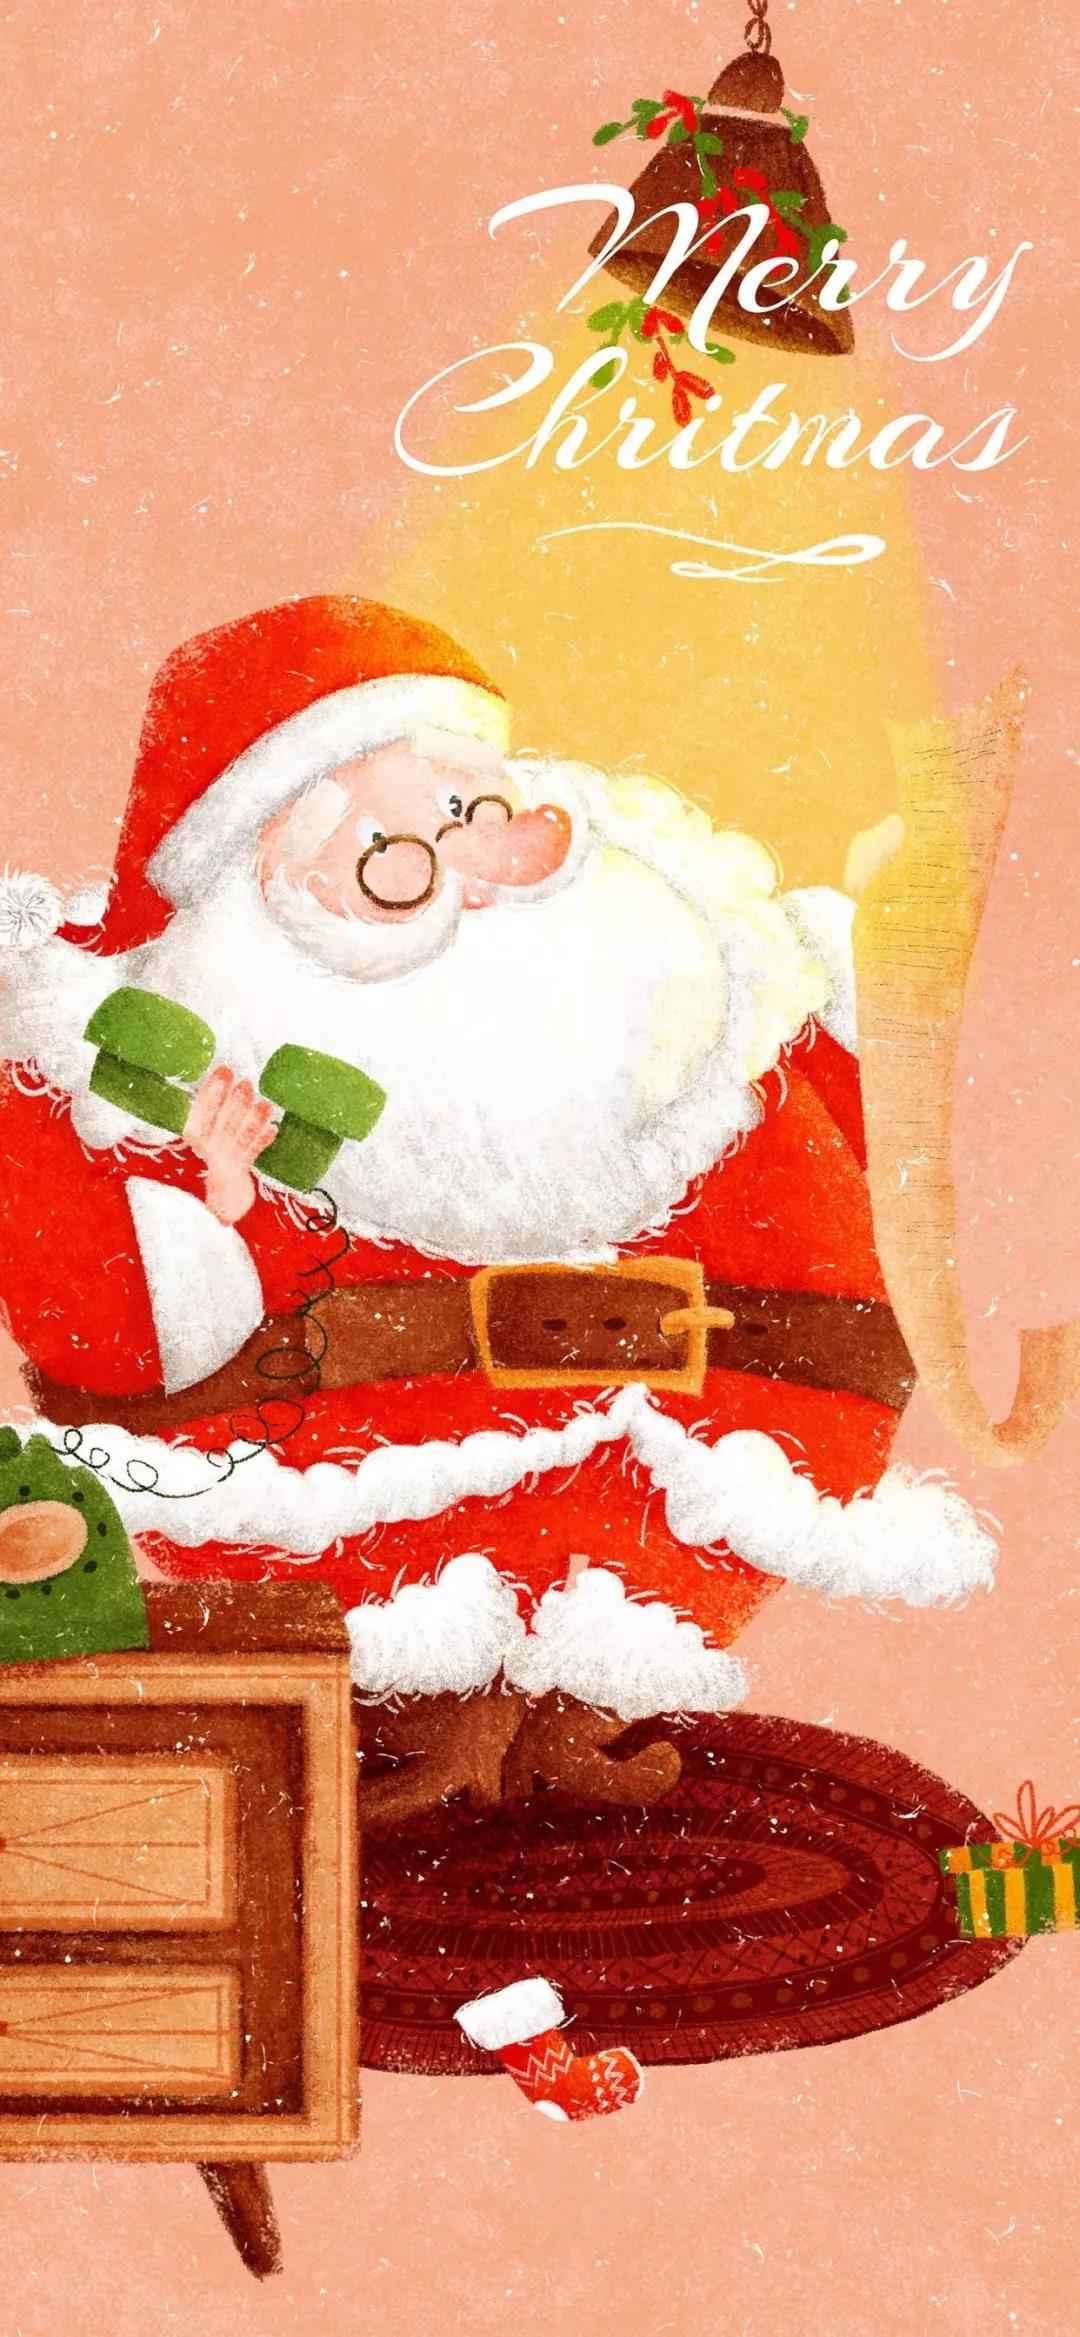 圣诞老人打电话白胡子红色圣诞衣服桌面壁纸图片